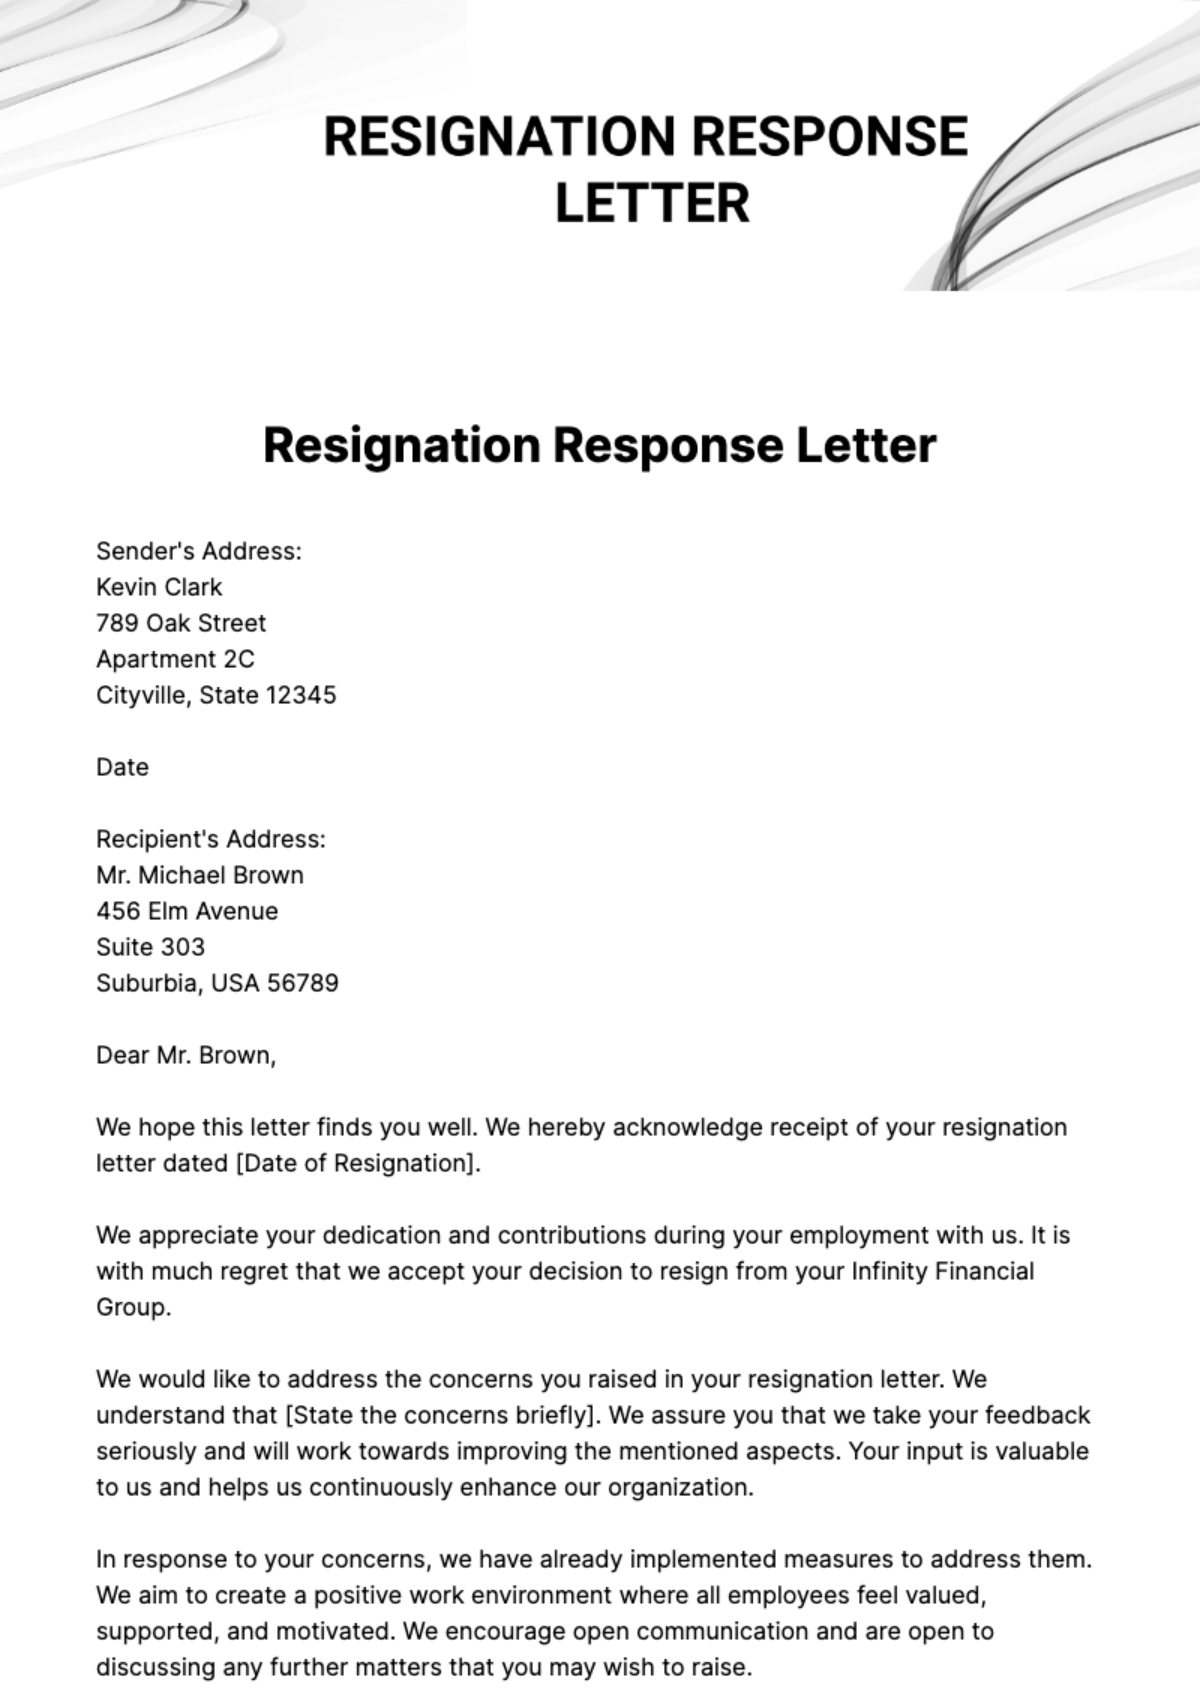 Resignation Response Letter Template